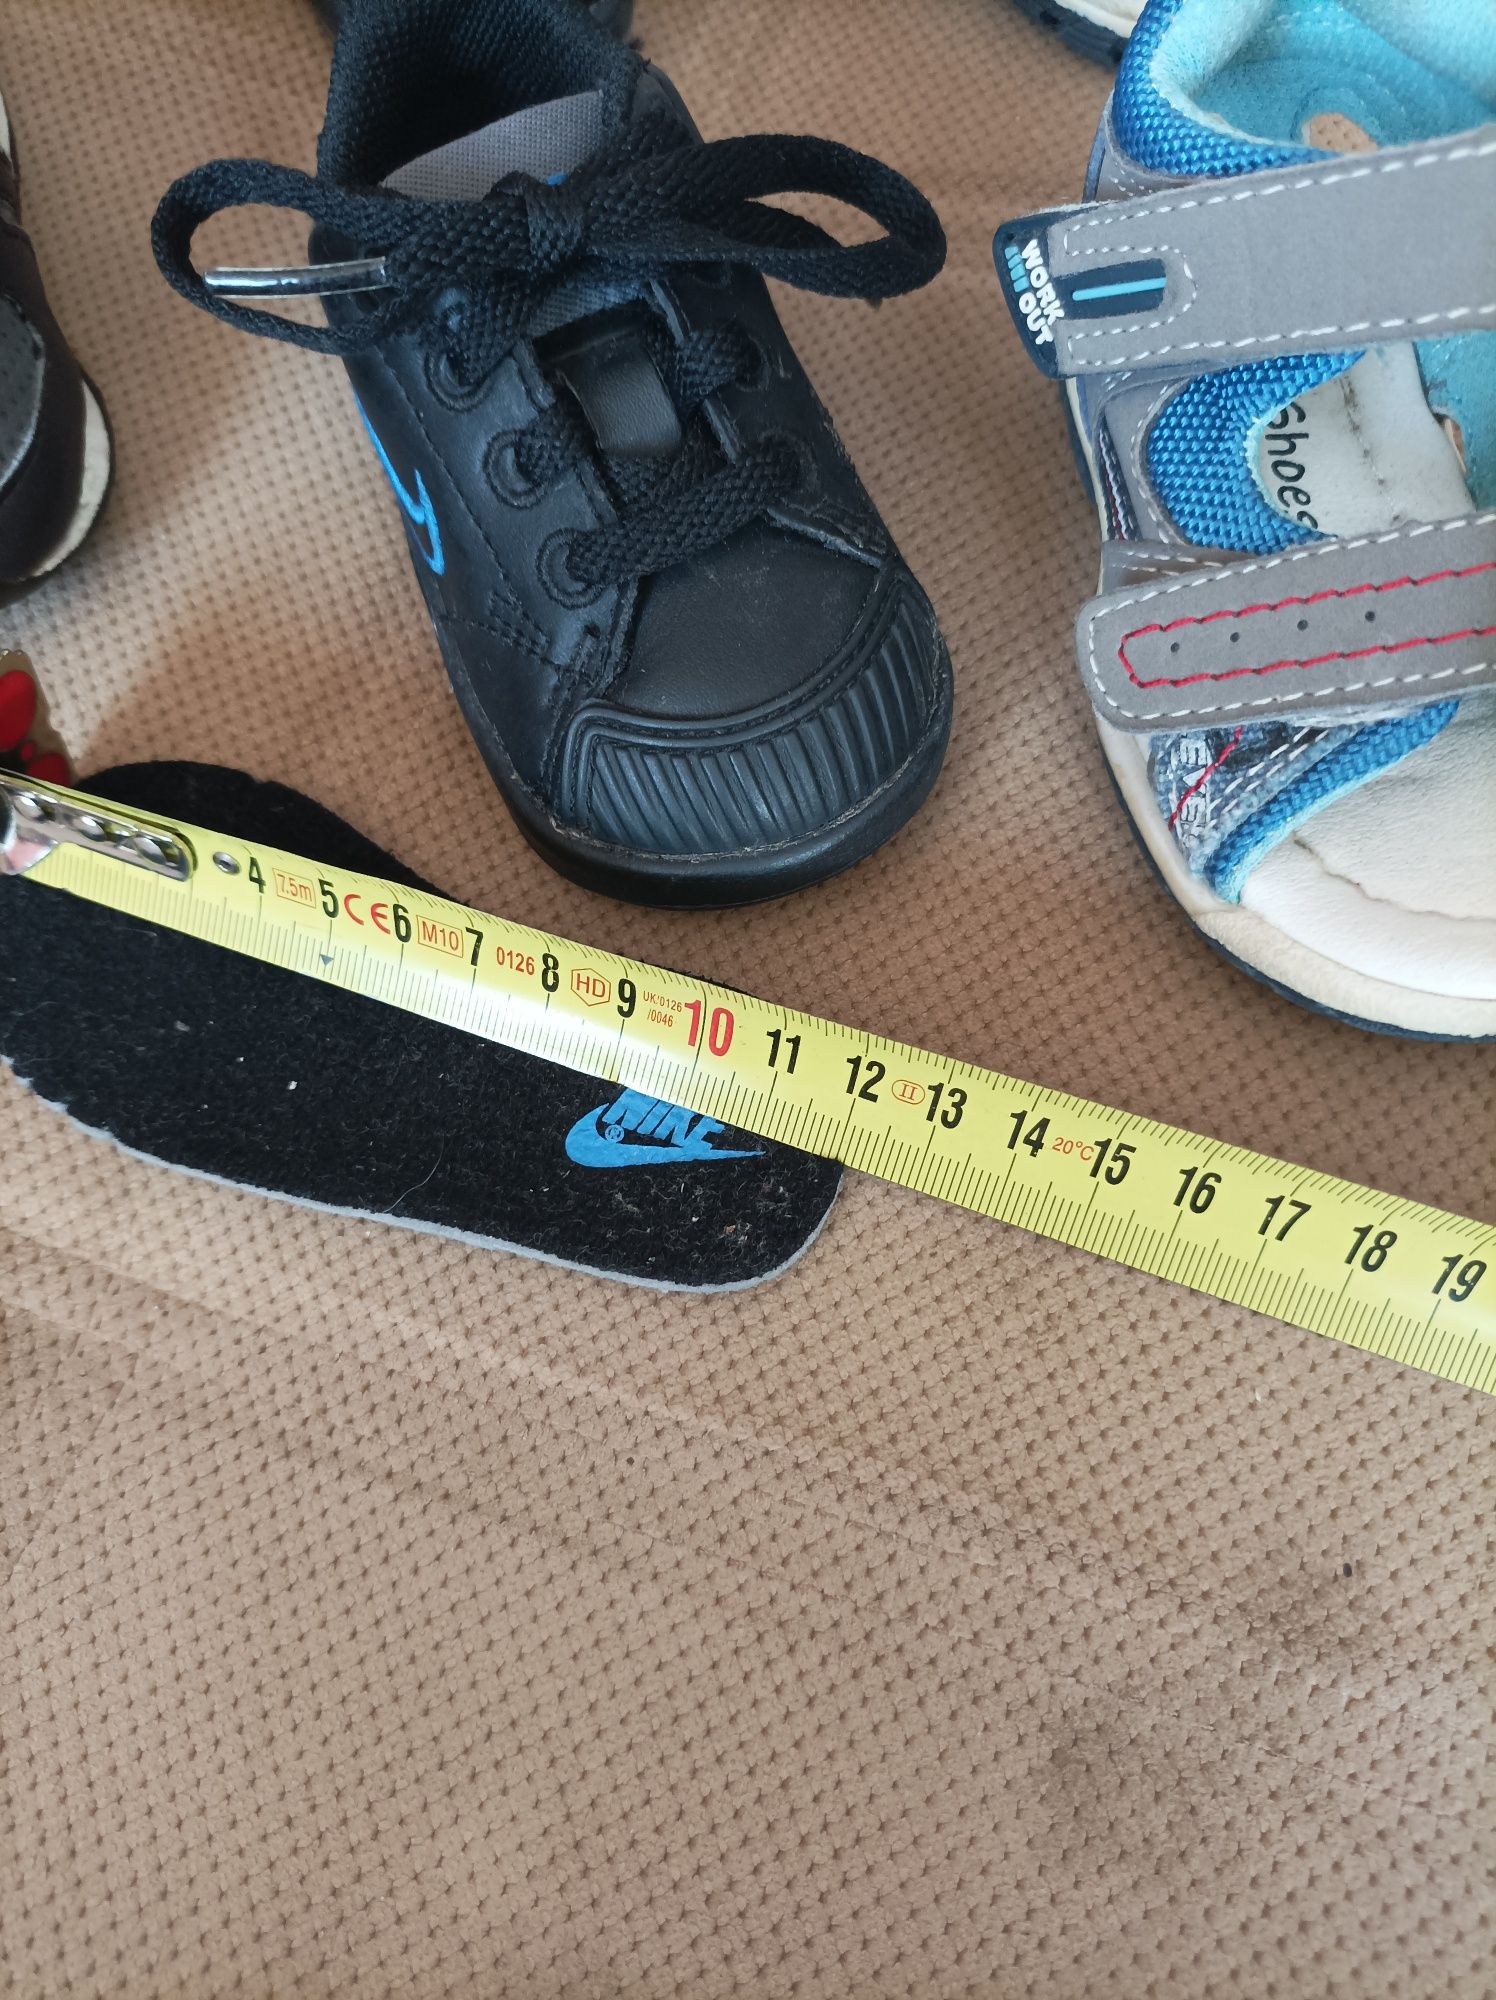 Adidasy Adidas Nike Kappa i sandały roz 18/19 dl wk 12cm